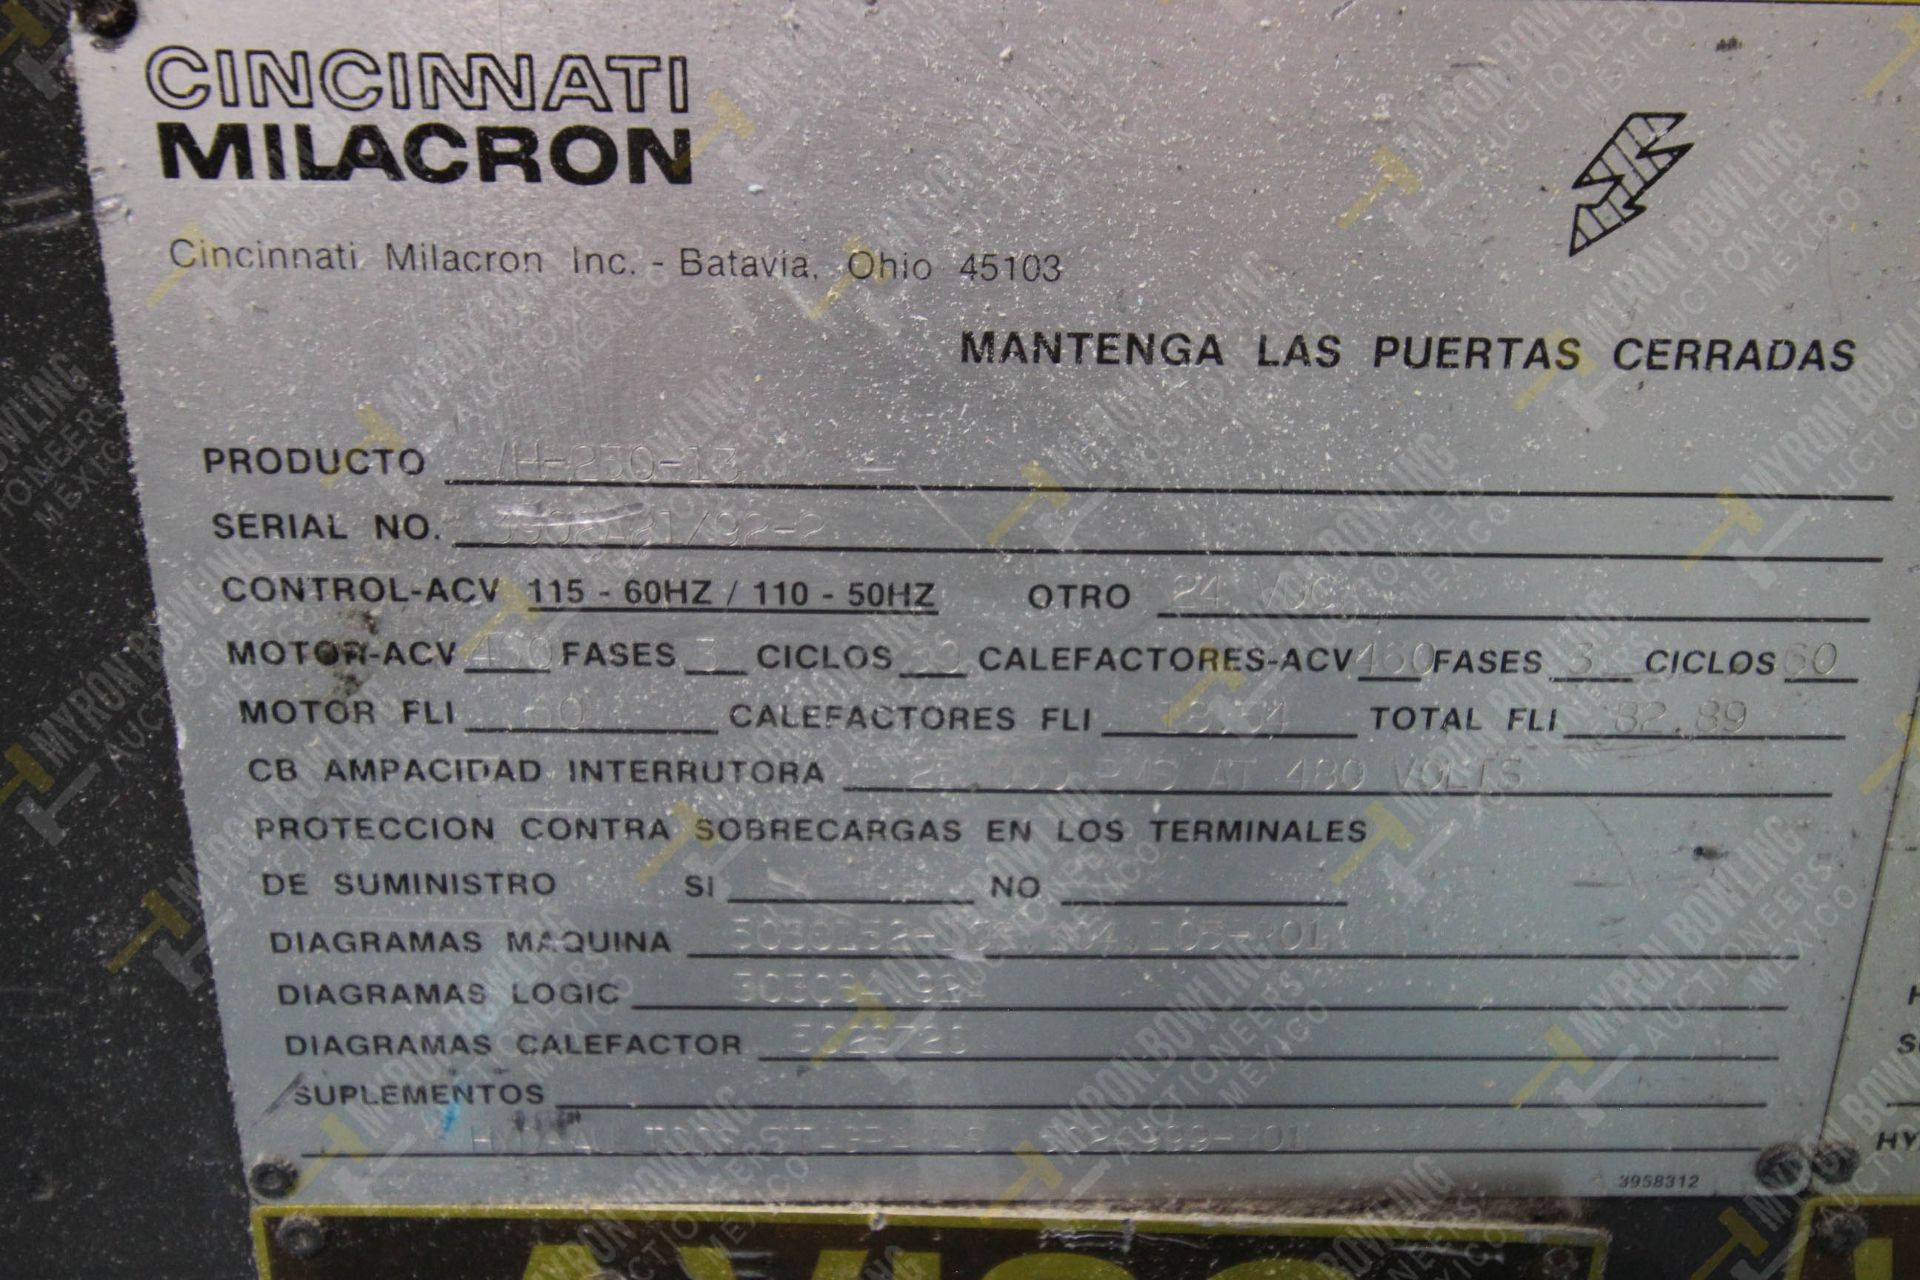 INYECTORA DE PLASTICO, MARCA CINCINNATI MILACRON, NO. SERIE 3902A21/92-2, NO. ACTIVO G11, AÑO 1992, - Image 17 of 19